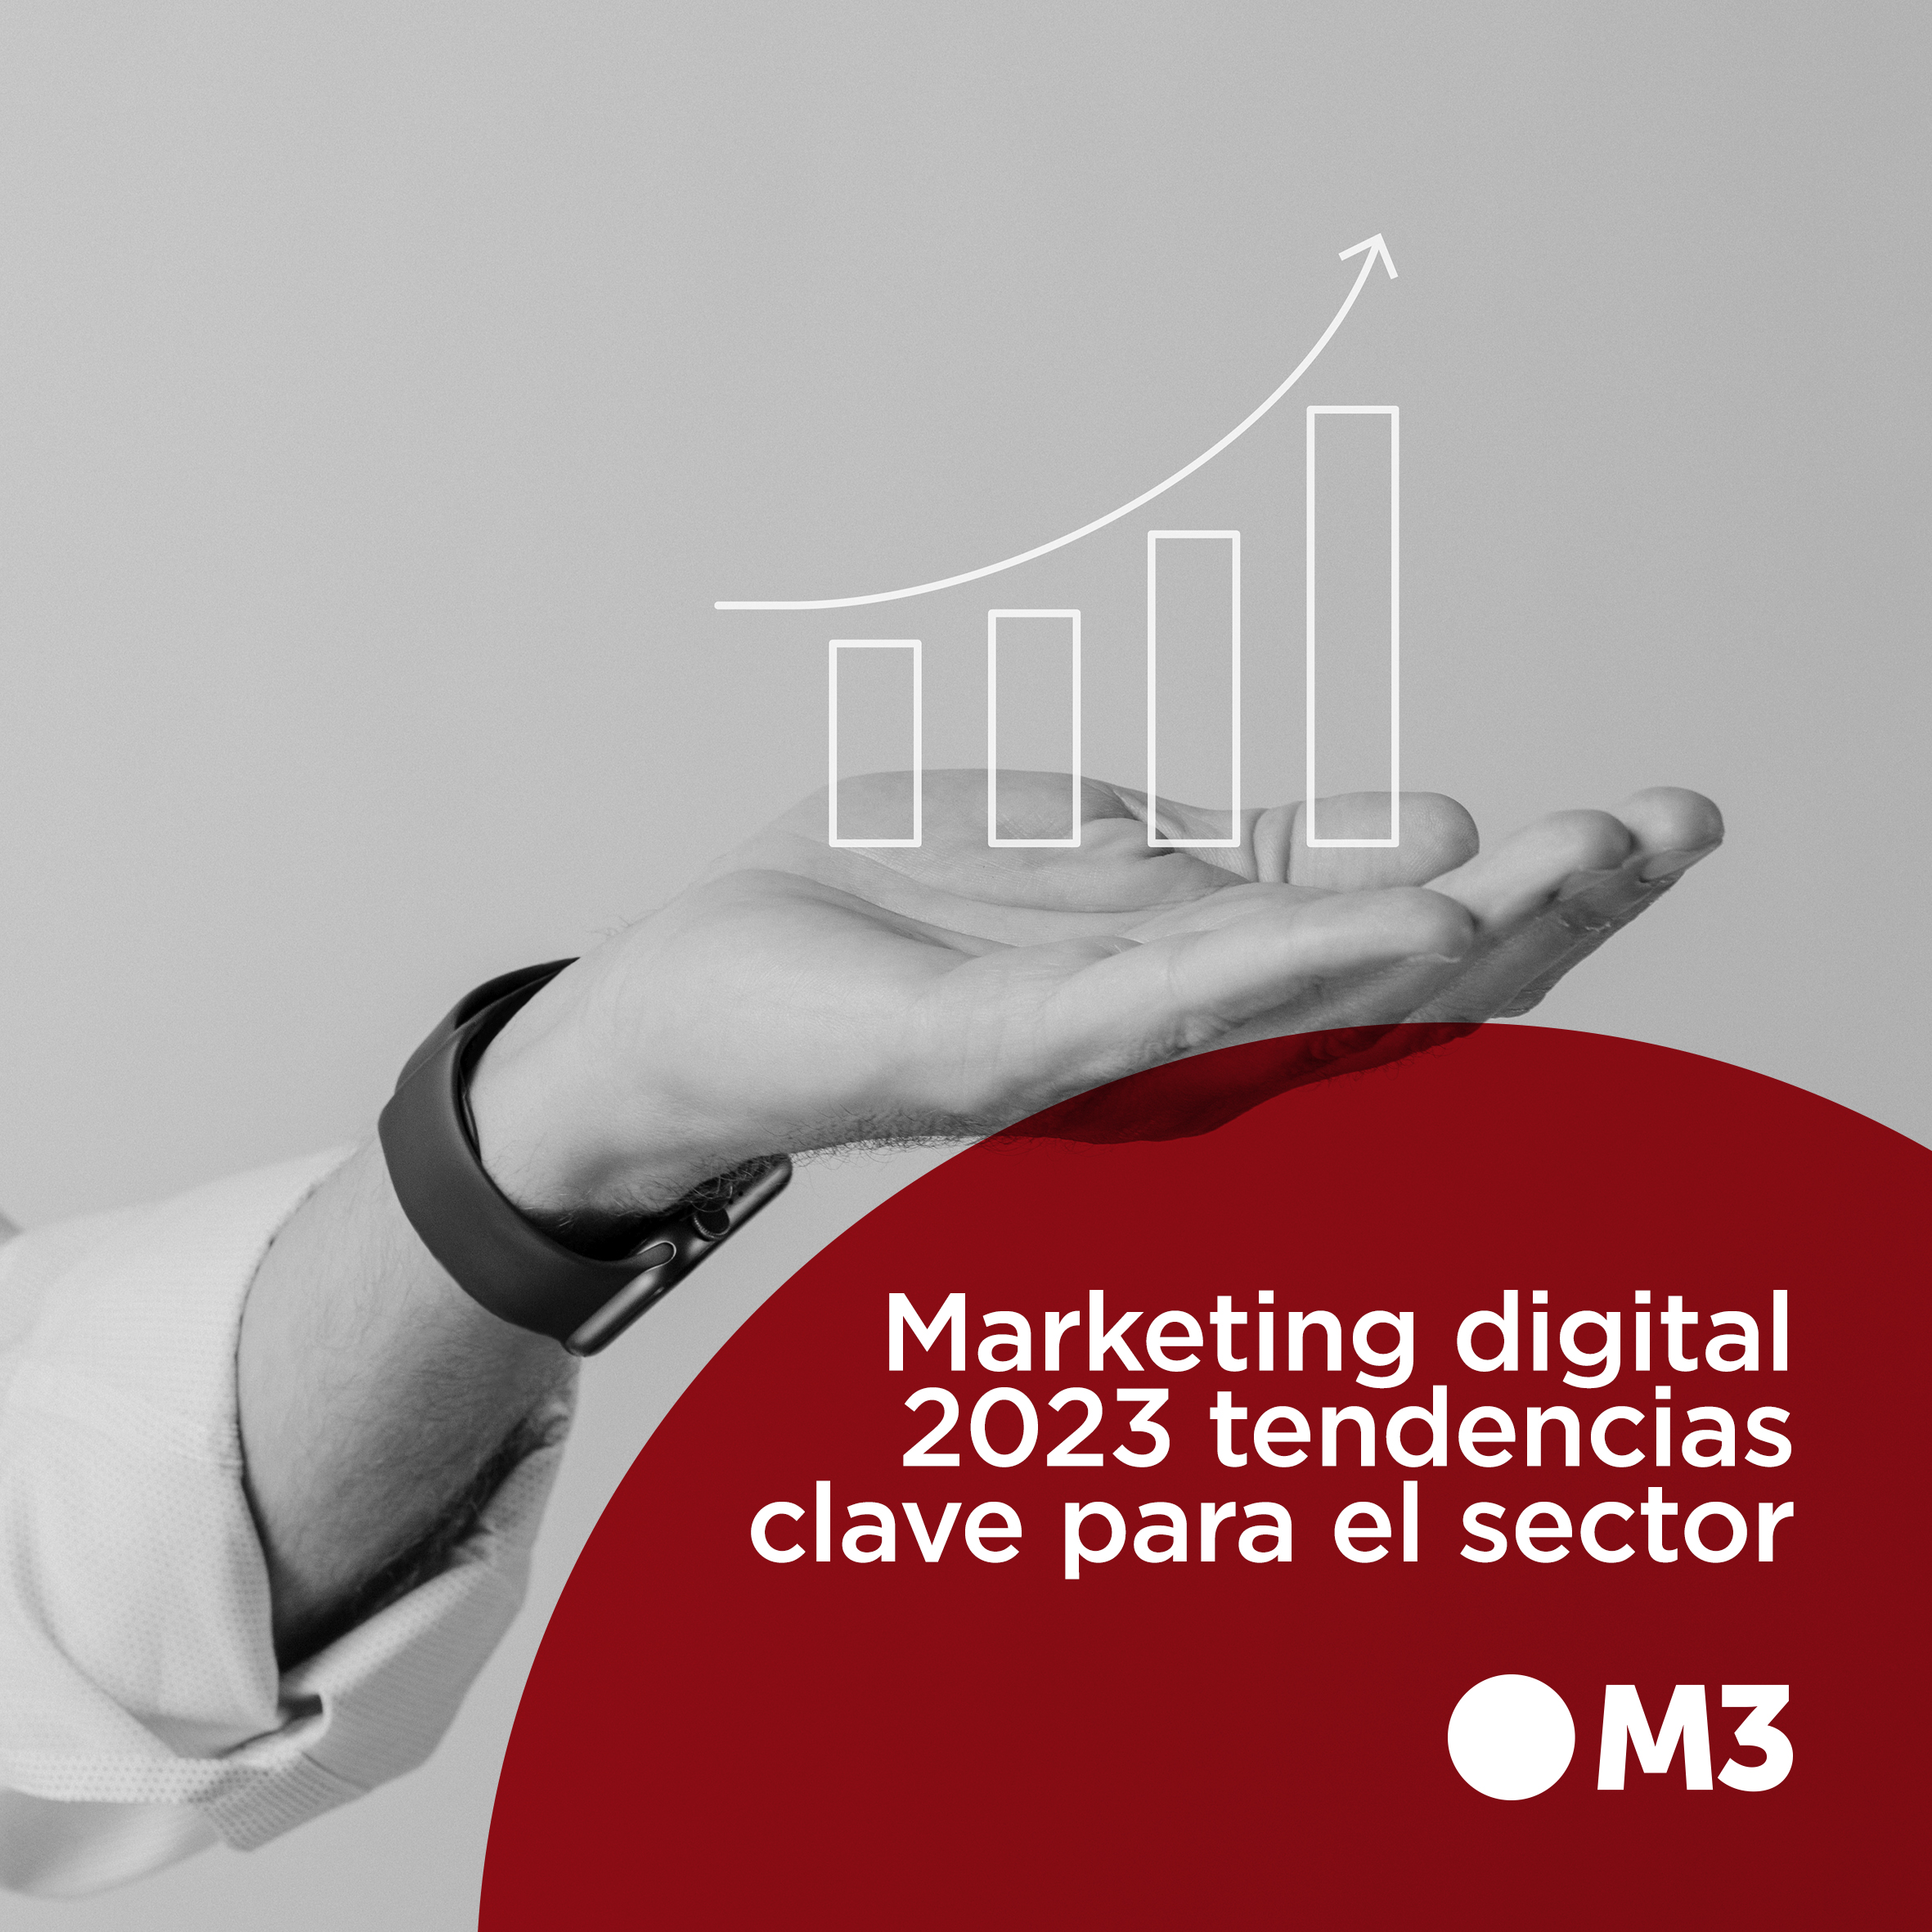 Marketing digital 2023 tendencias clave para el sector